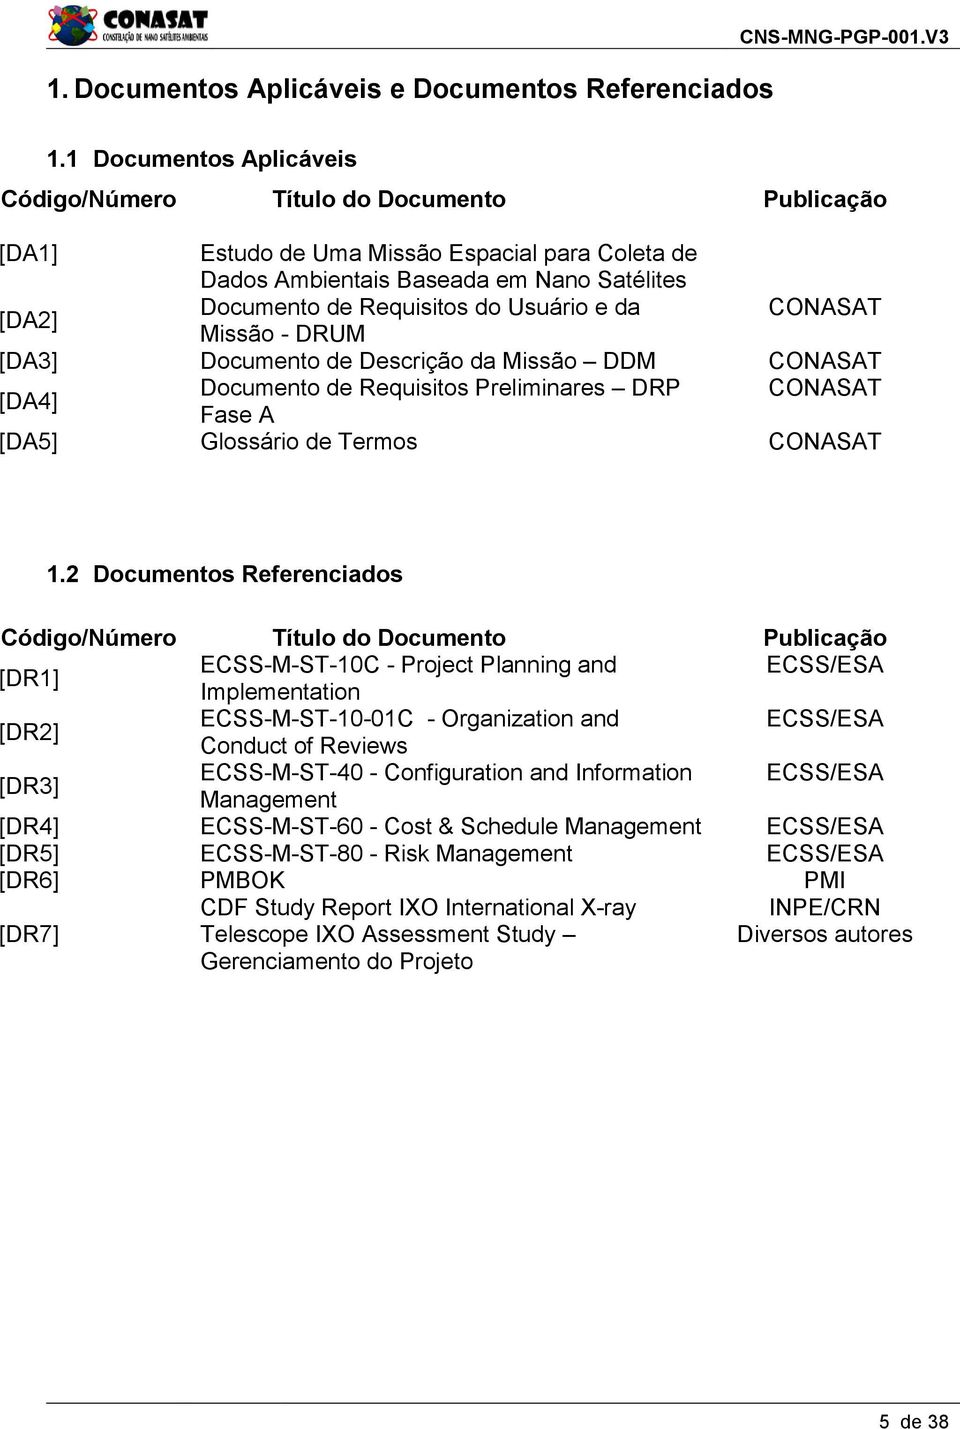 Usuário e da CONASAT Missão - DRUM [DA3] Documento de Descrição da Missão DDM CONASAT [DA4] Documento de Requisitos Preliminares DRP CONASAT Fase A [DA5] Glossário de Termos CONASAT 1.